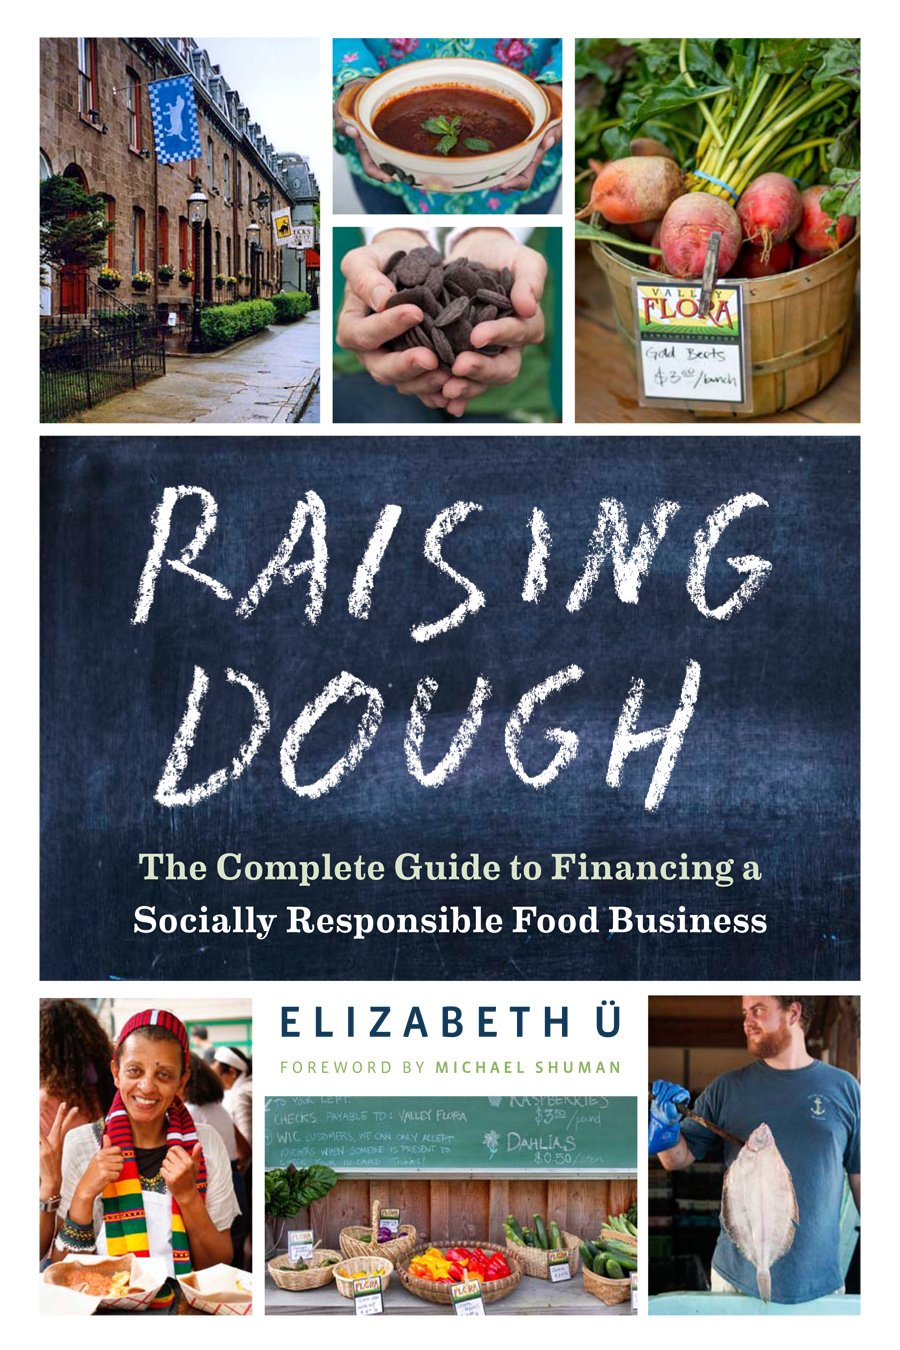 The Raising Dough cover